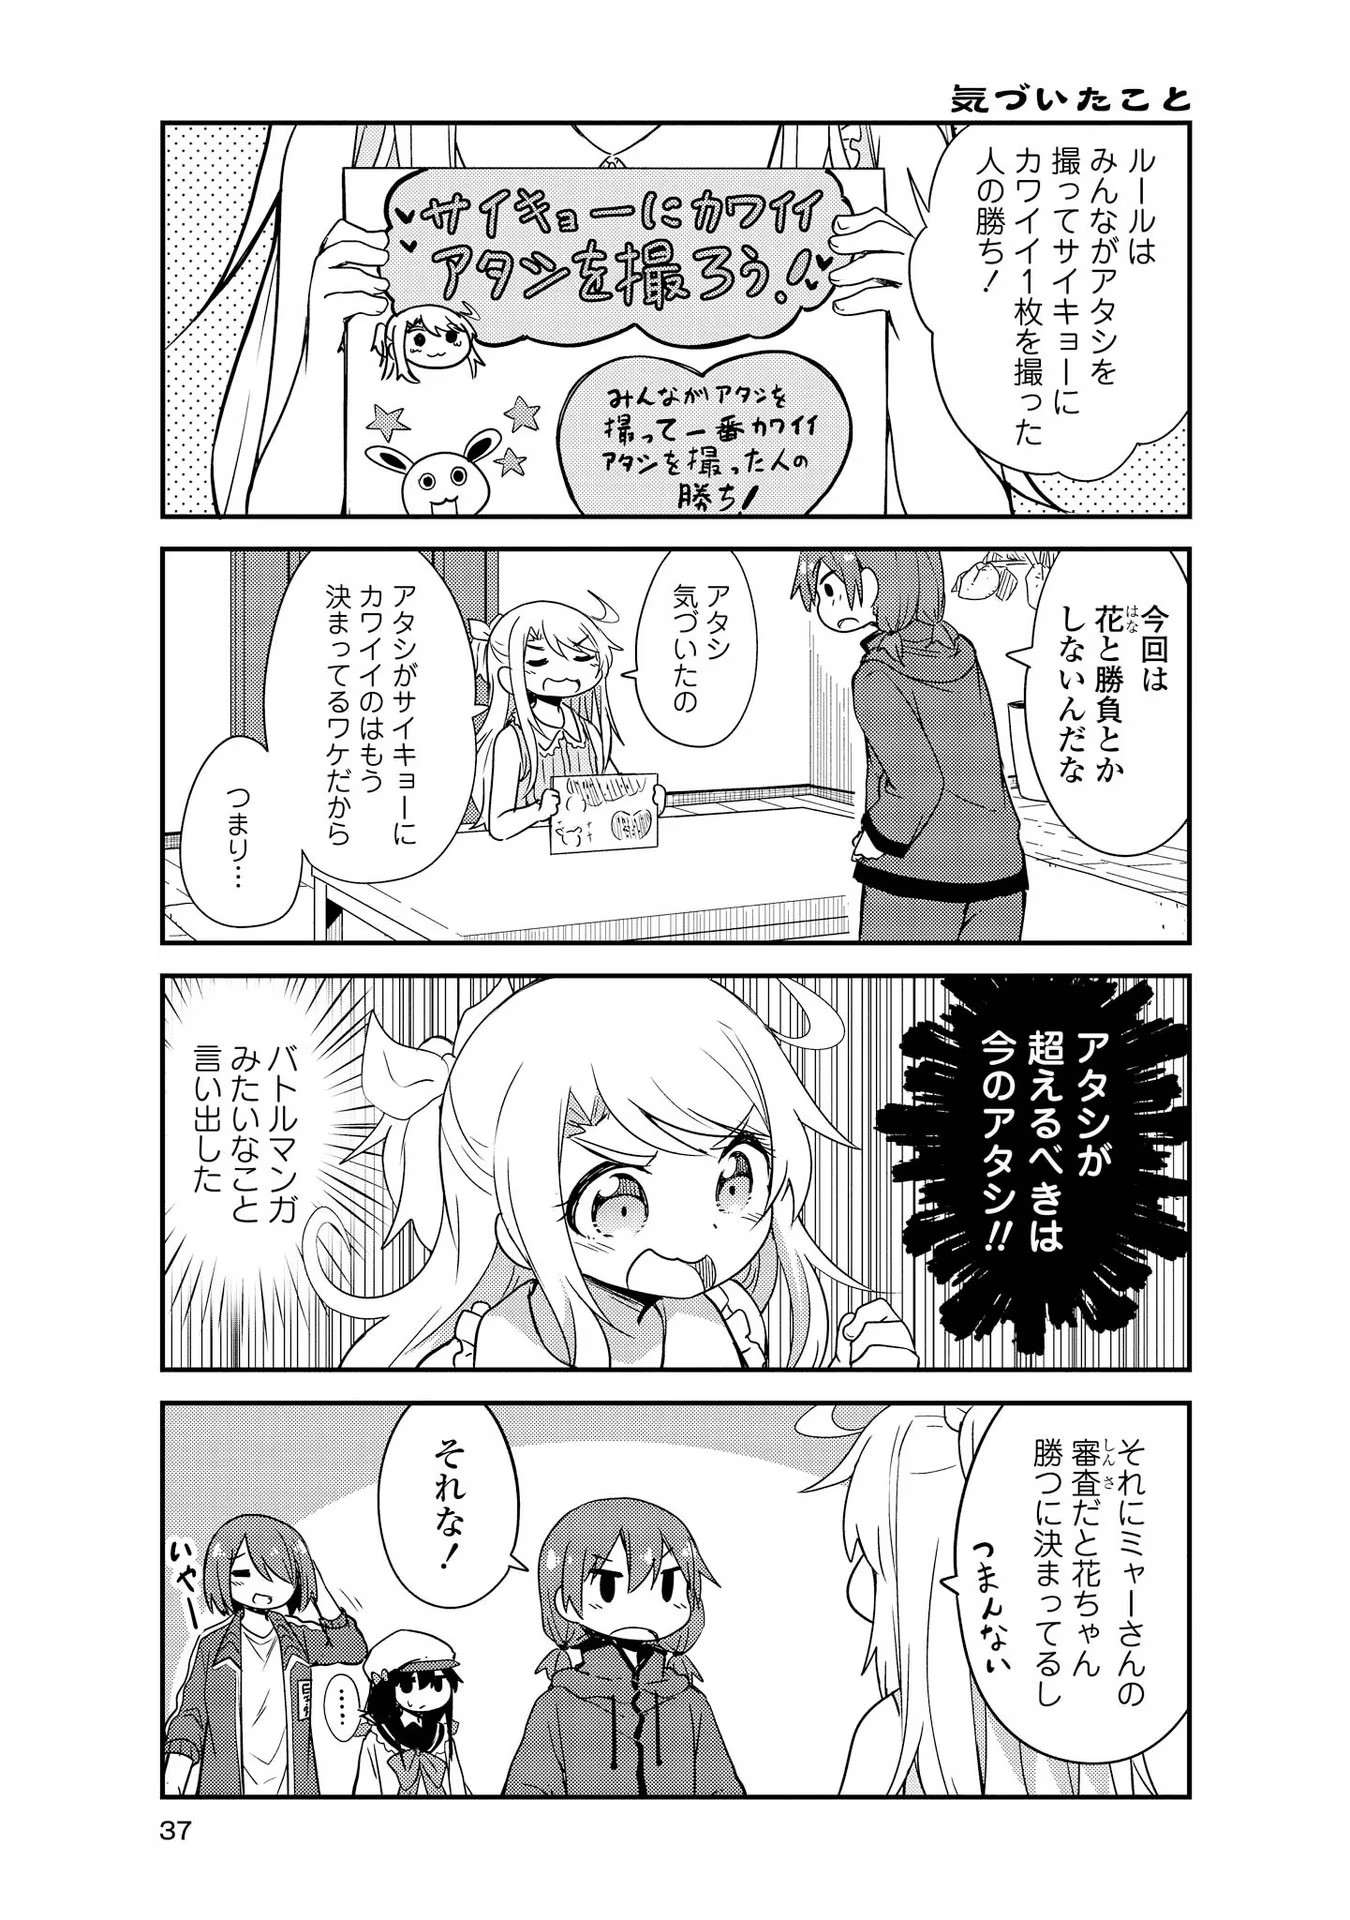 Watashi ni Tenshi ga Maiorita! - Chapter 23 - Page 3